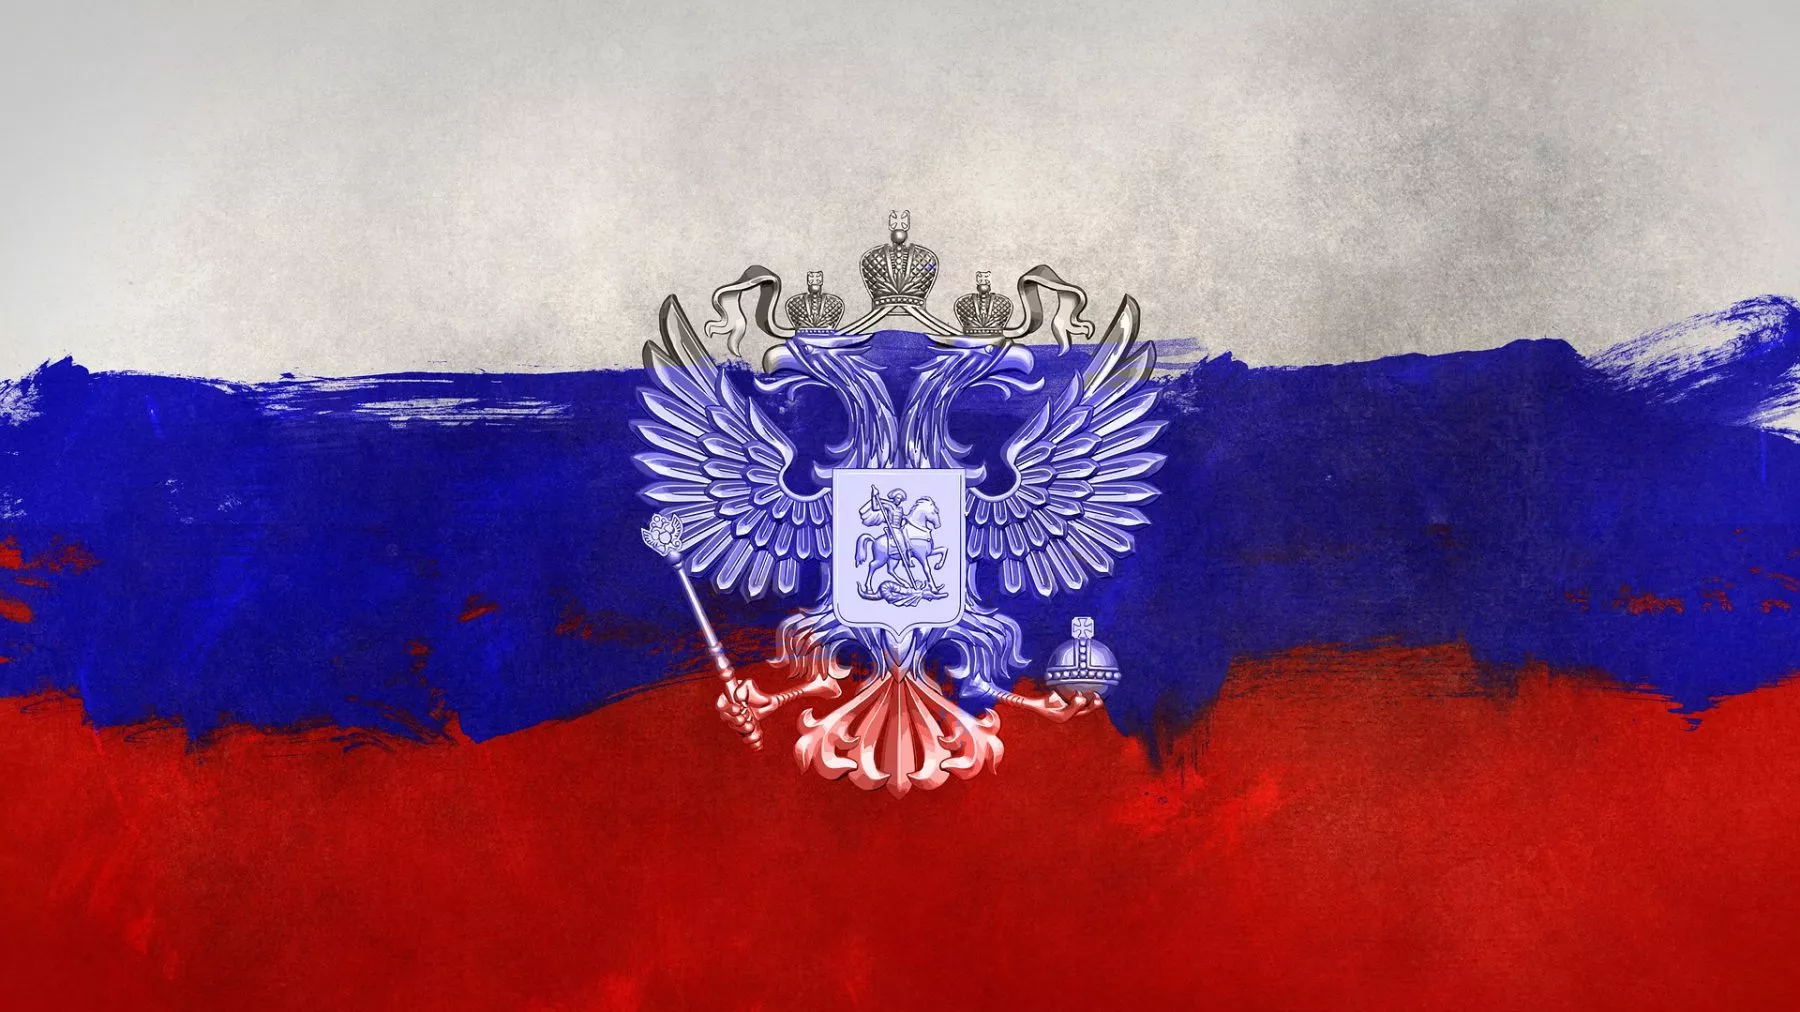 Rusland overweegt verbod gebruik van crypto als betaalmiddel